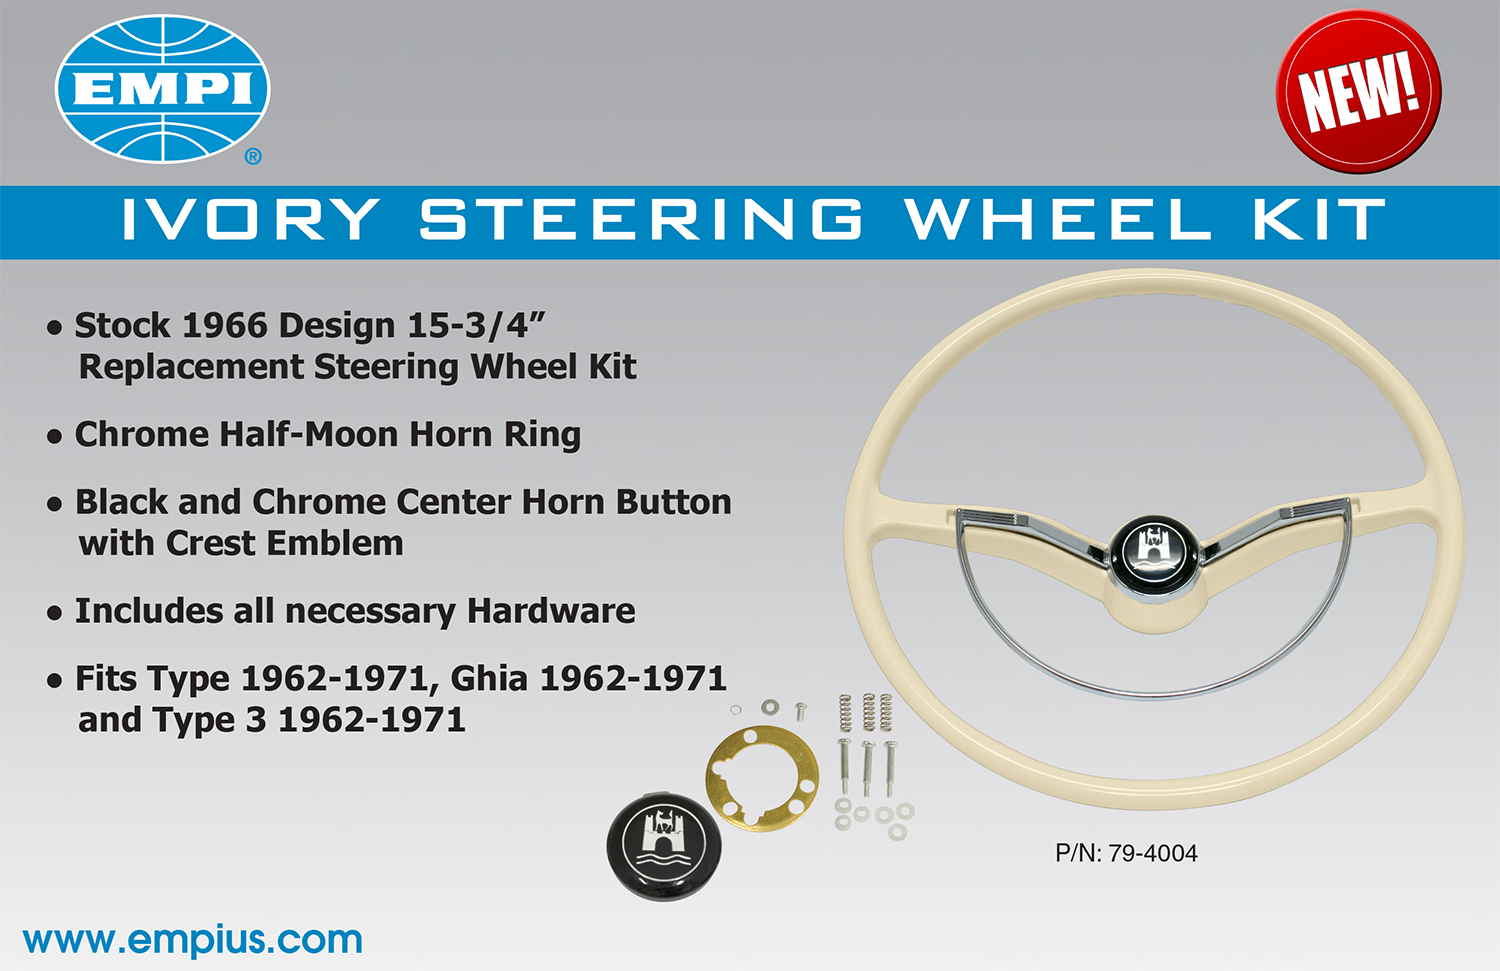 Ivory Steering Wheel Kit